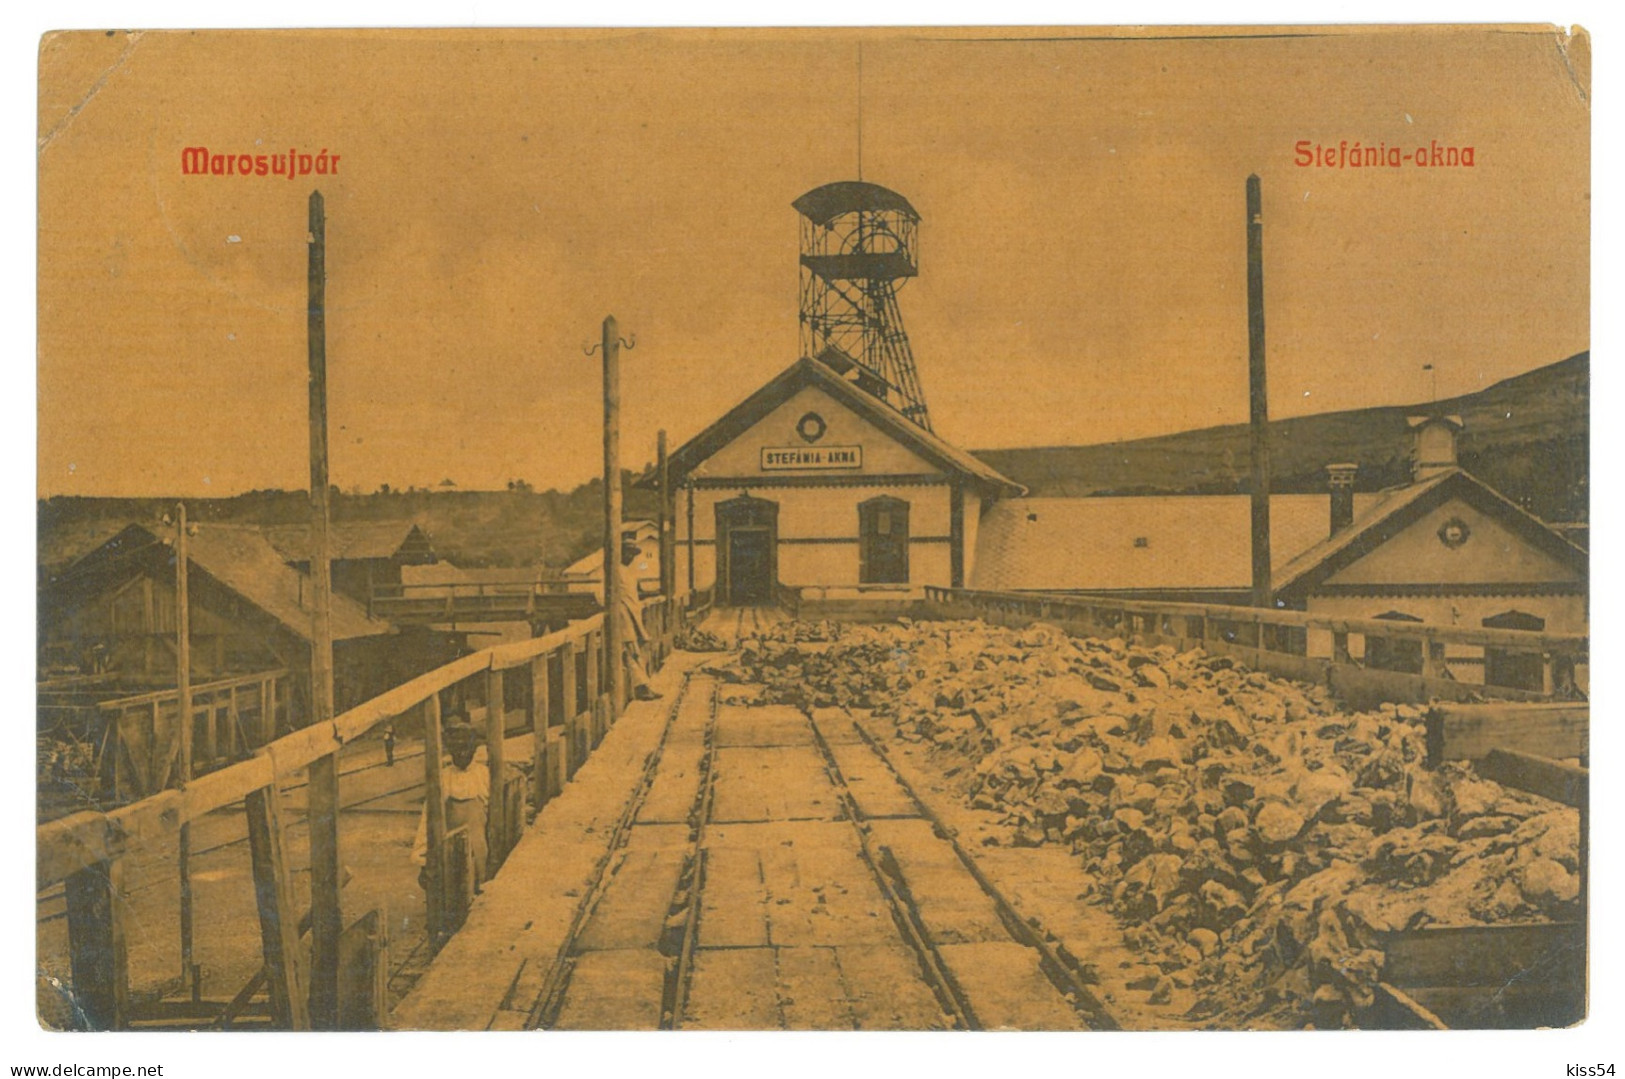 RO 81 - 25042 OCNA MURES, Alba, SALT Mine, Romania - Old Postcard - Used - 1910 - Romania